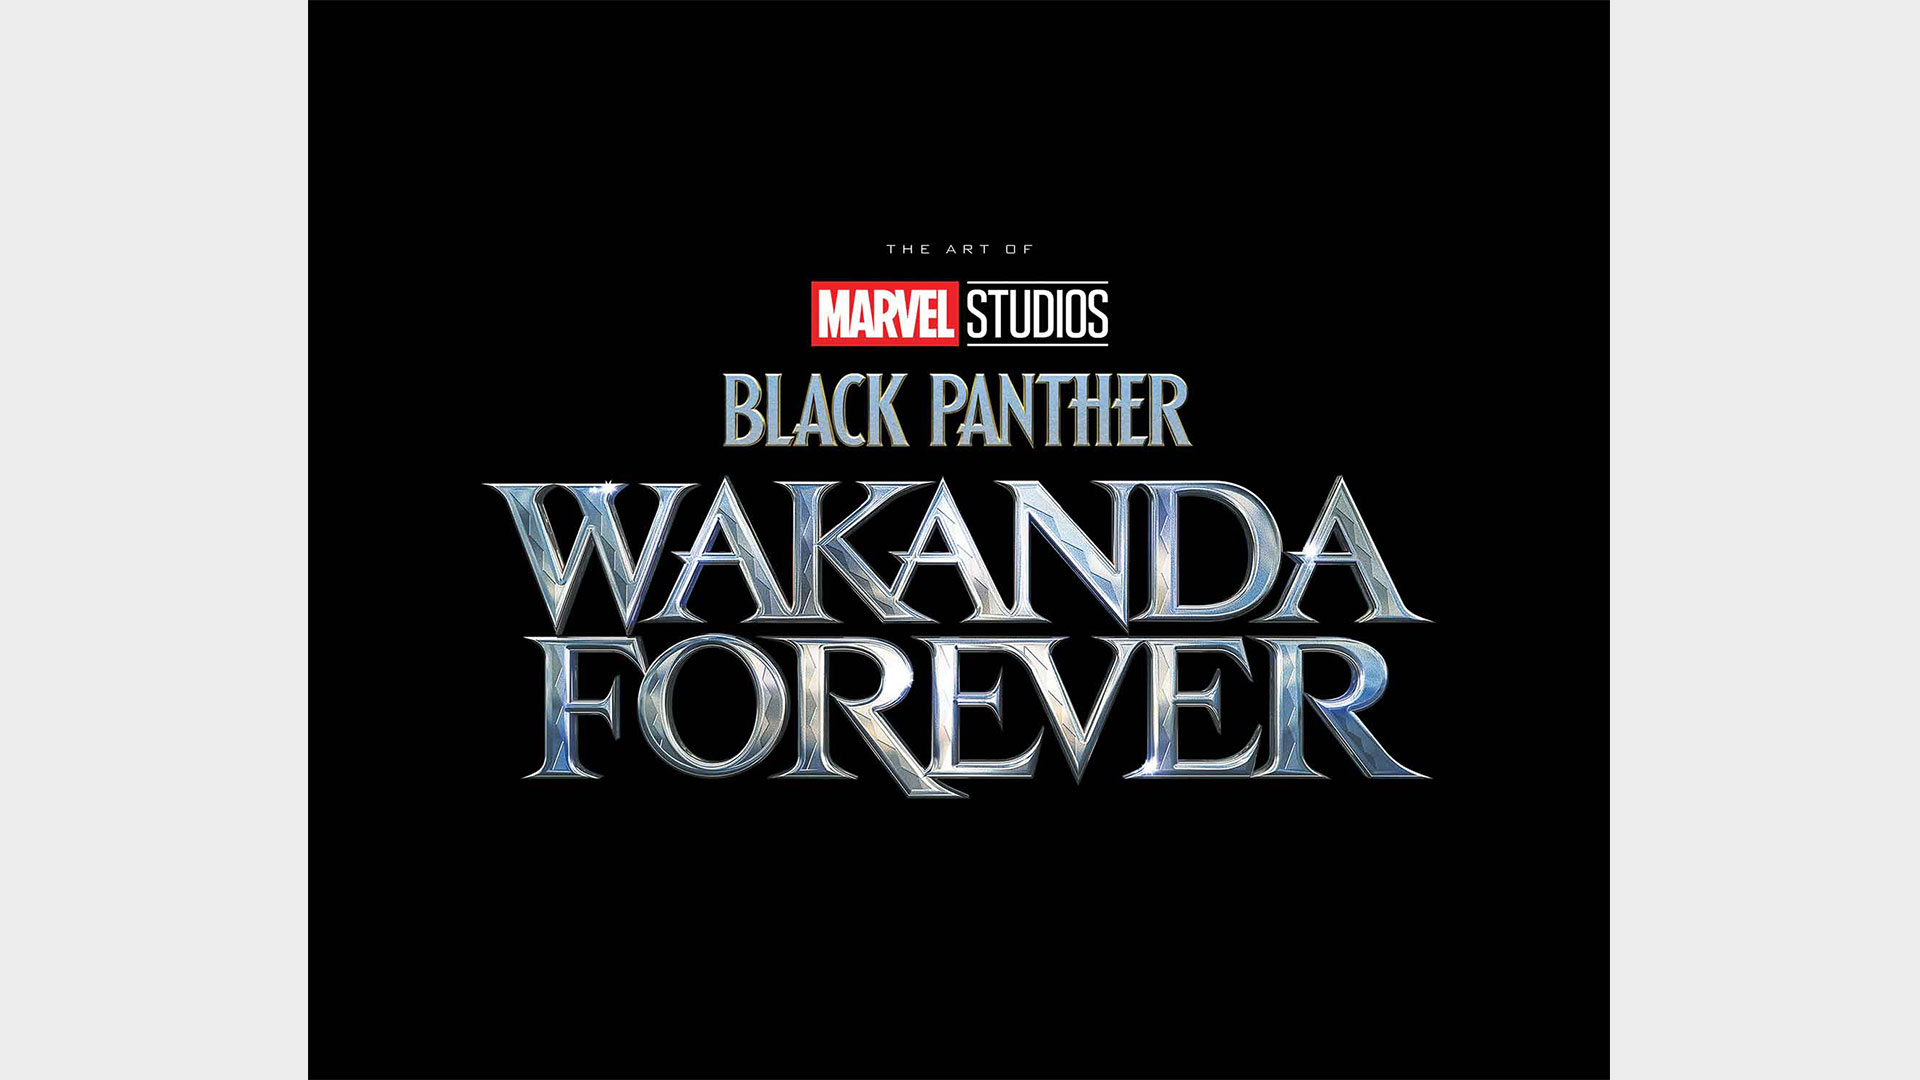 MARVEL STUDIOS' BLACK PANTHER: WAKANDA FOREVER - DIE KUNST DES FILMS